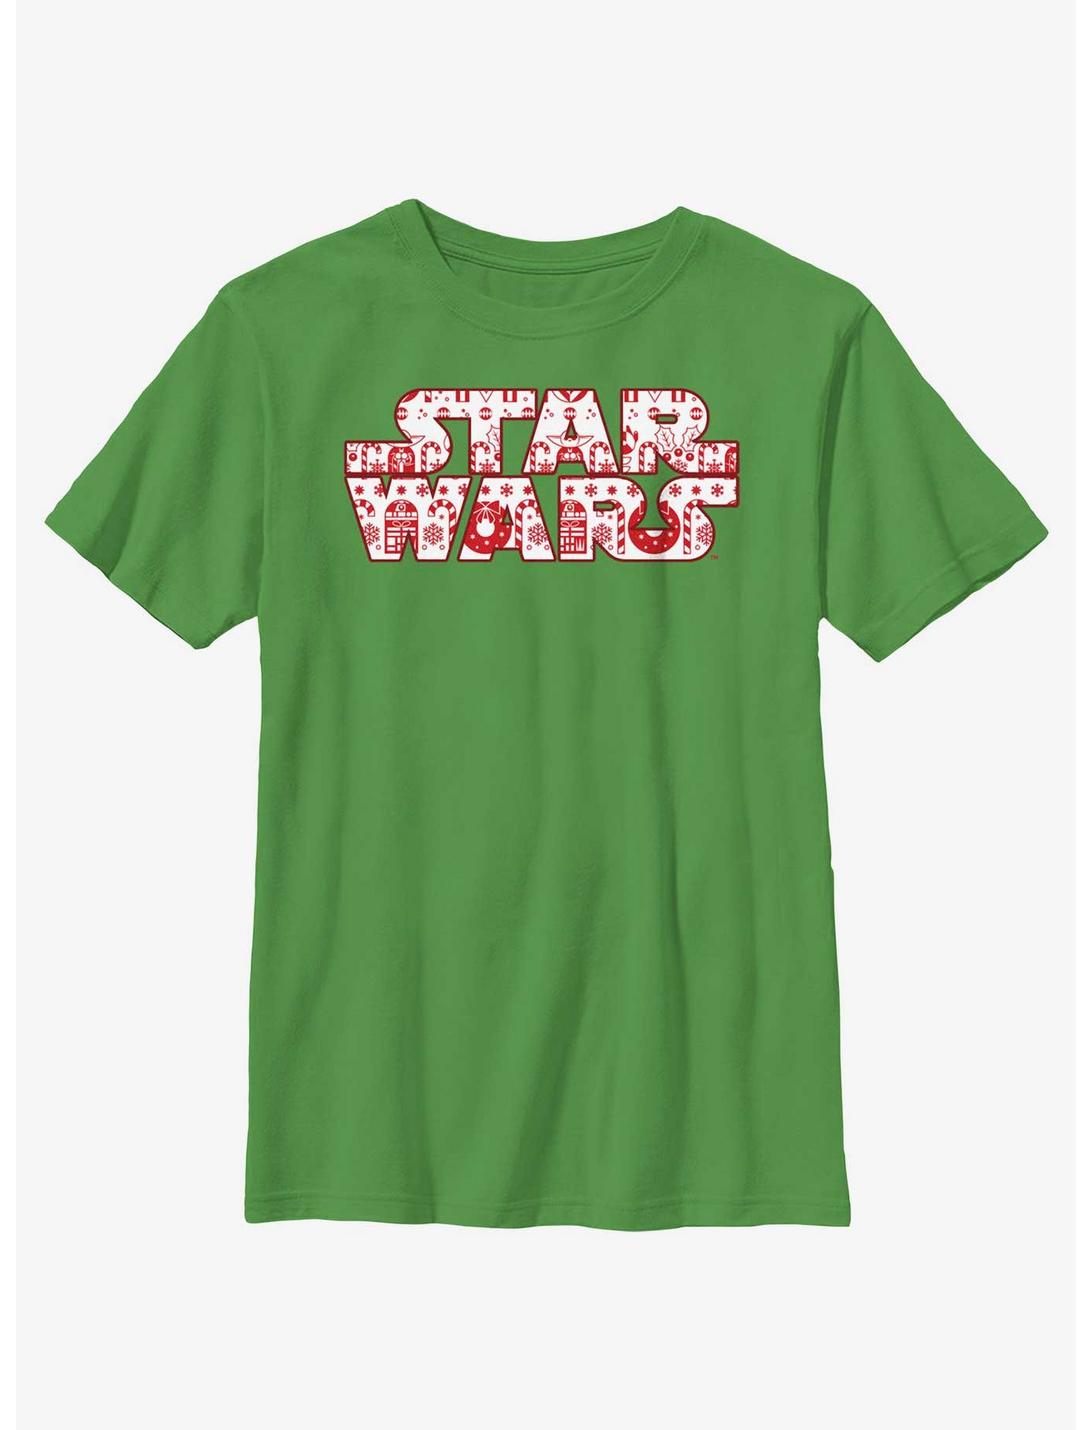 Star Wars Christmas Logo Fill Youth T-Shirt, KELLY, hi-res